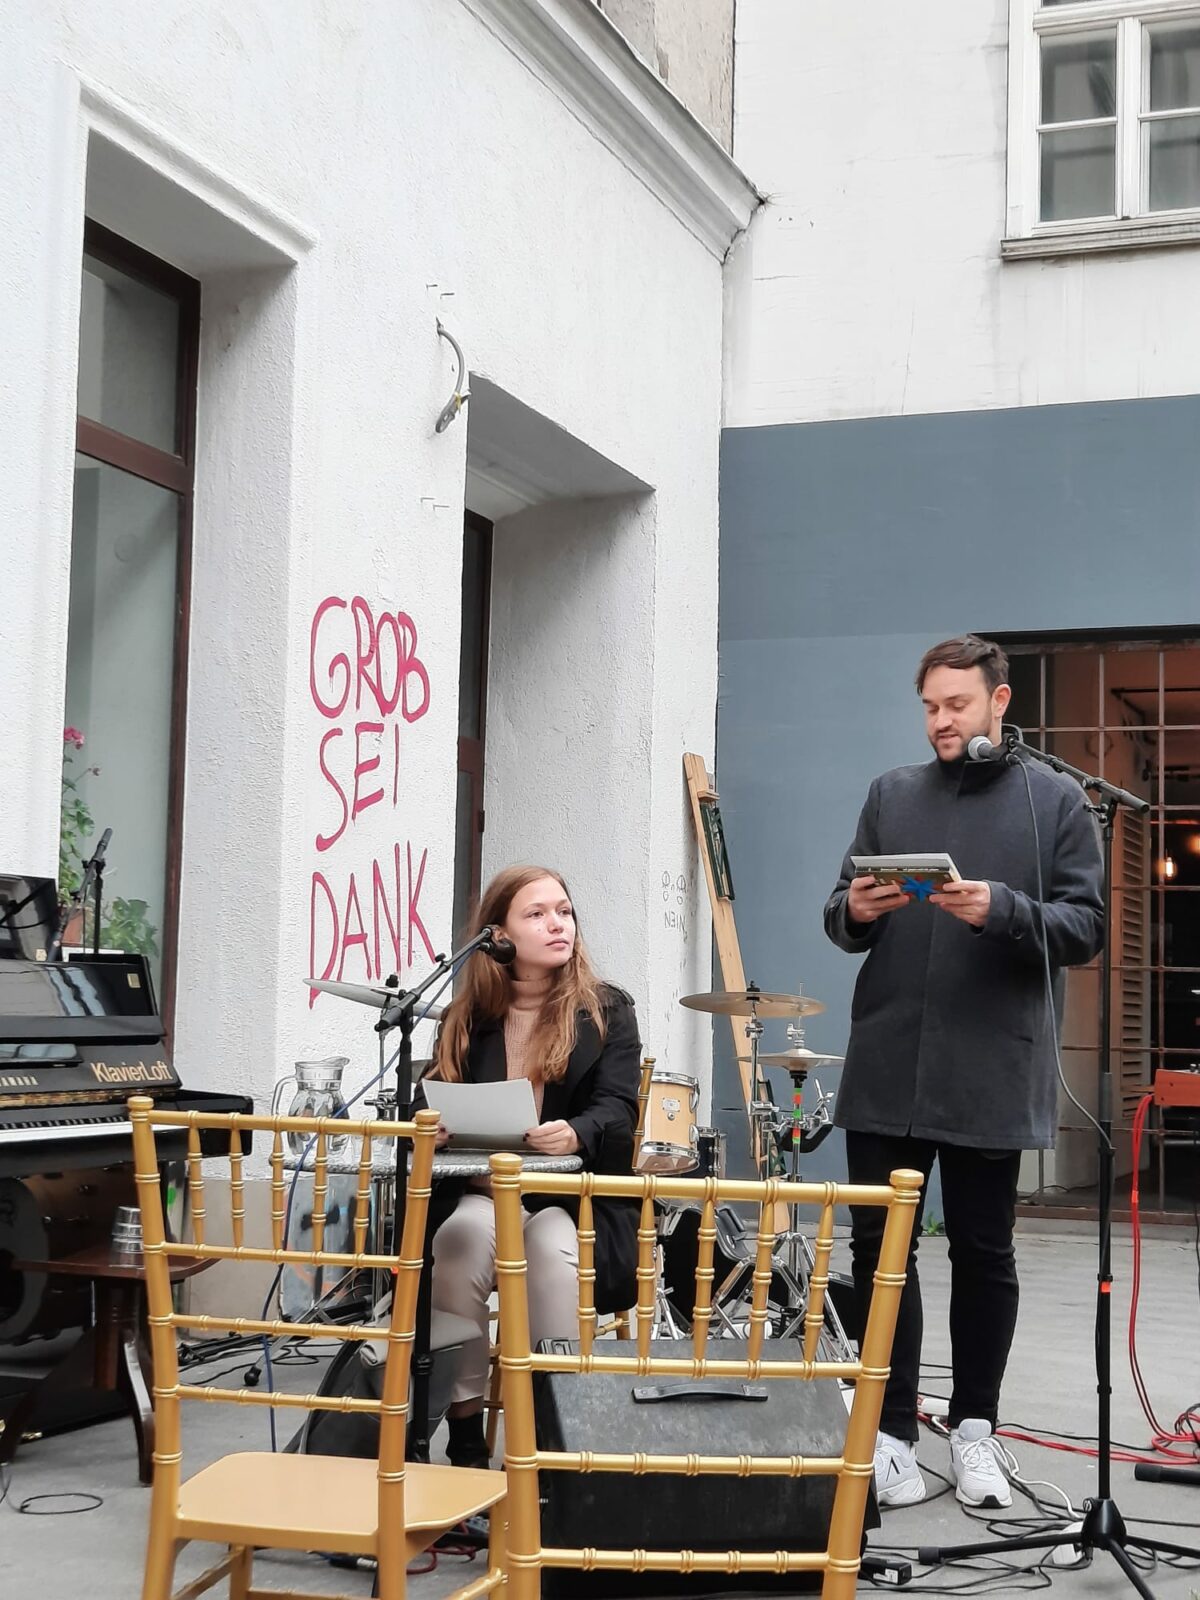 Die exil.Literaturhauswerkstatt bei der Literaturmeile Zieglergasse 2022 / 1070 Wien: Werkstatt-Leiter Thomas Perle stellt Autorin Ella Steinbacher vor